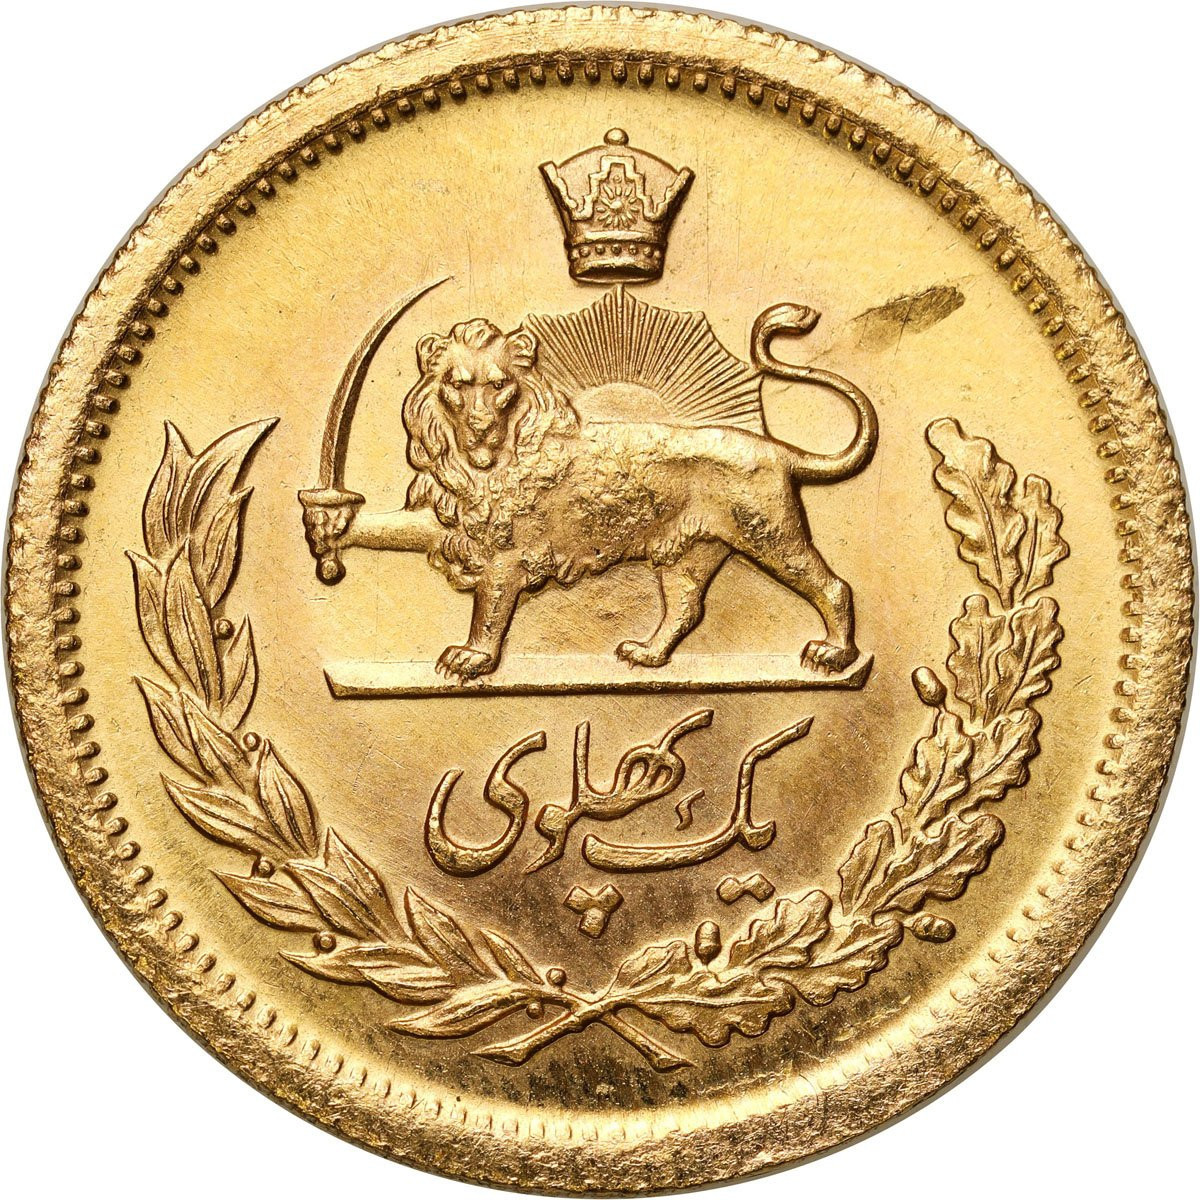 Iran, Mohammed Reza Pahlevi. 1 Pahlevi 1354 SH (1975 AD) - PIĘKNY